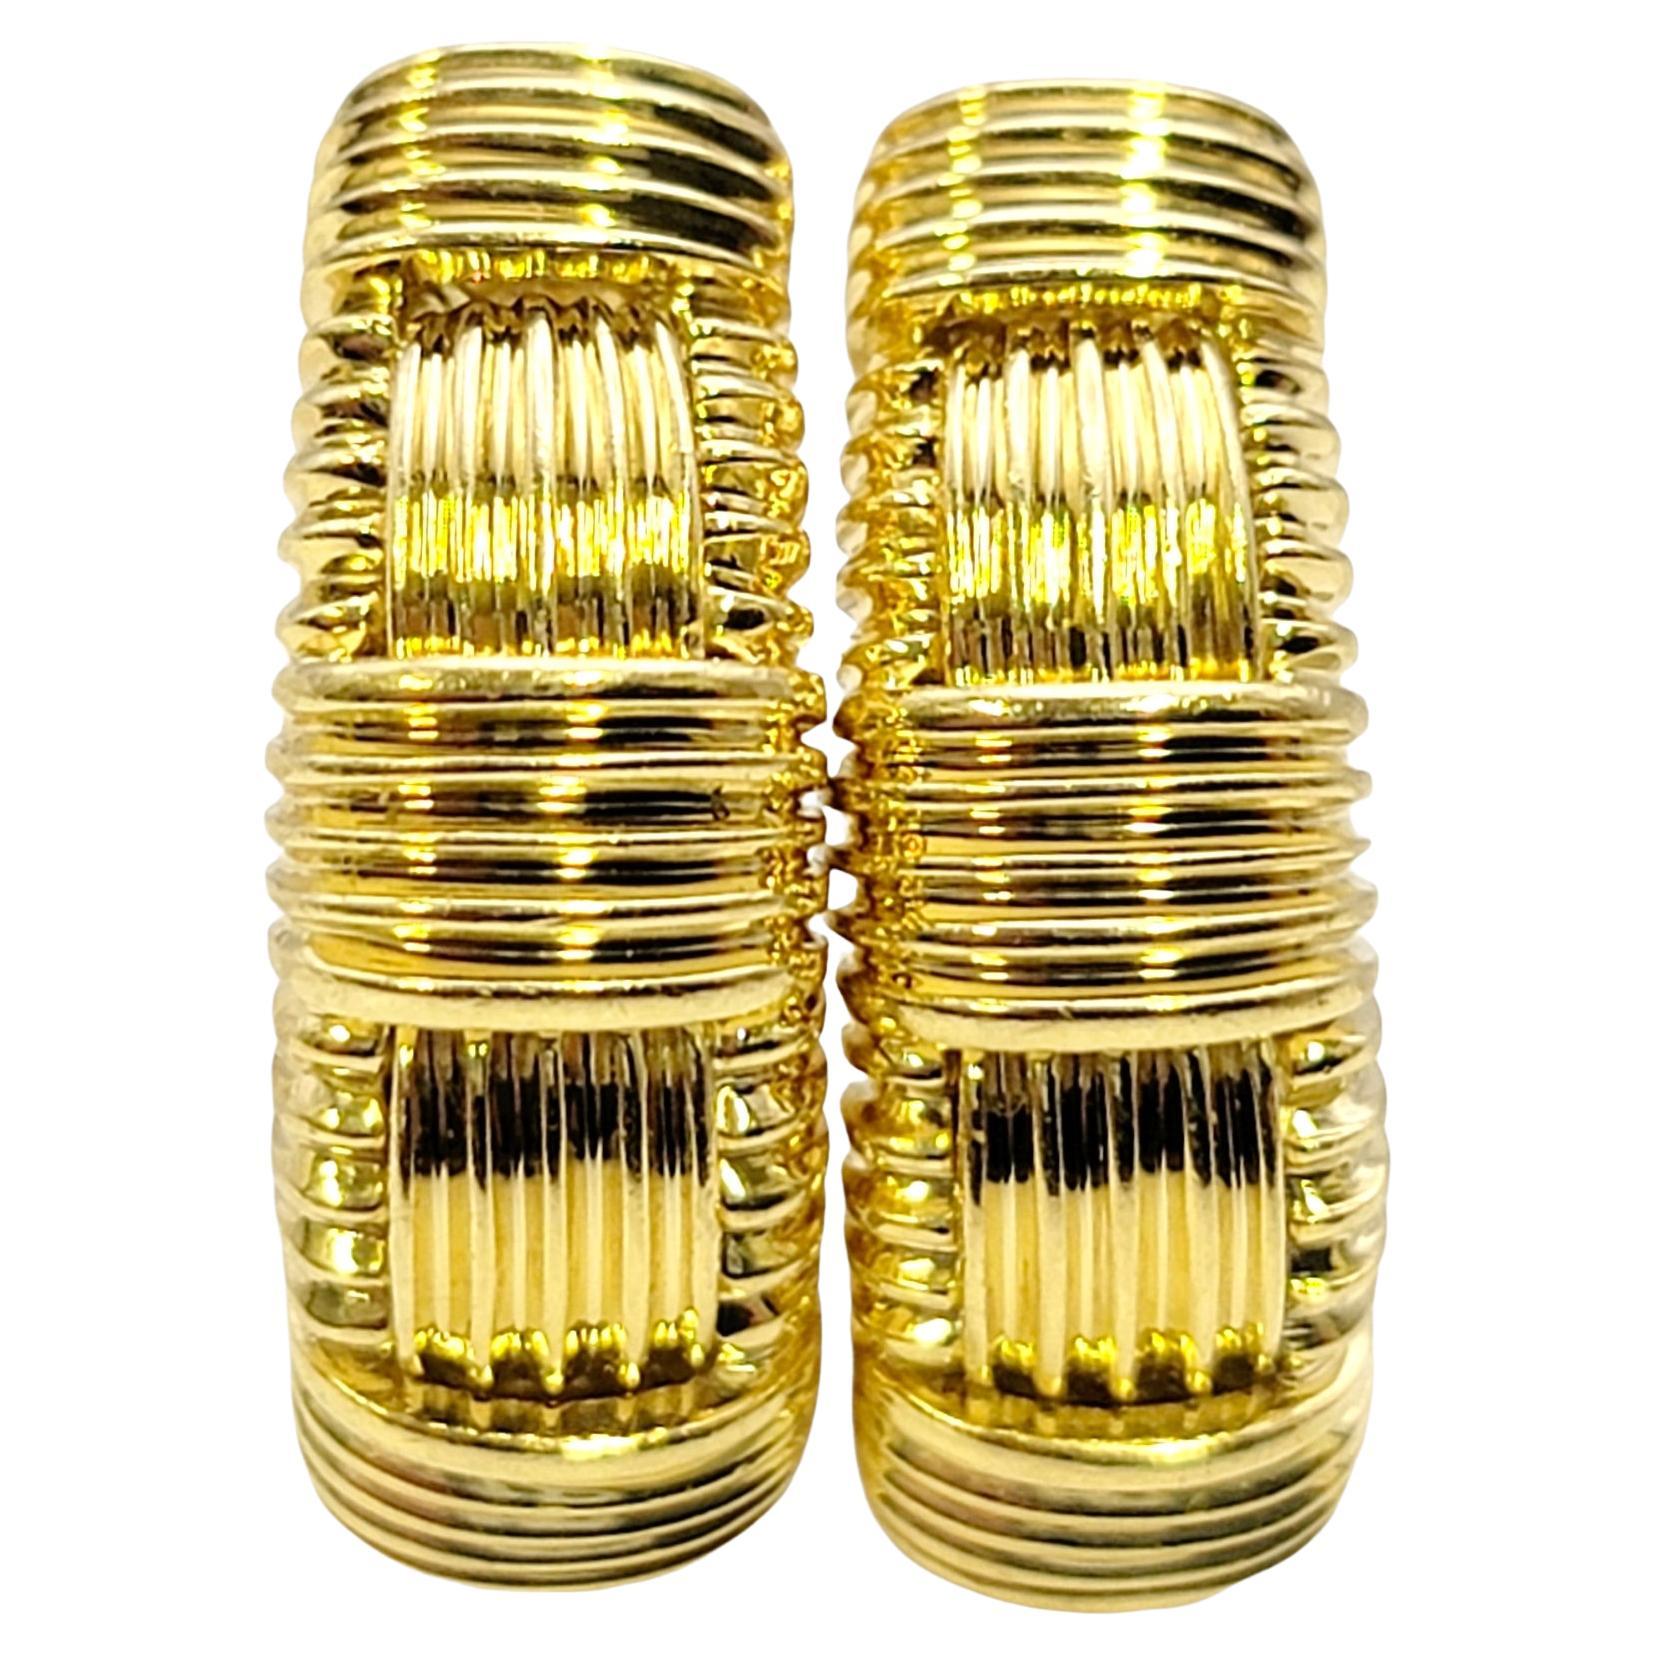 Roberto Coin Appassionata Texturierte halber Creolen aus 18 Karat Gold mit durchbohrten Ohrringen